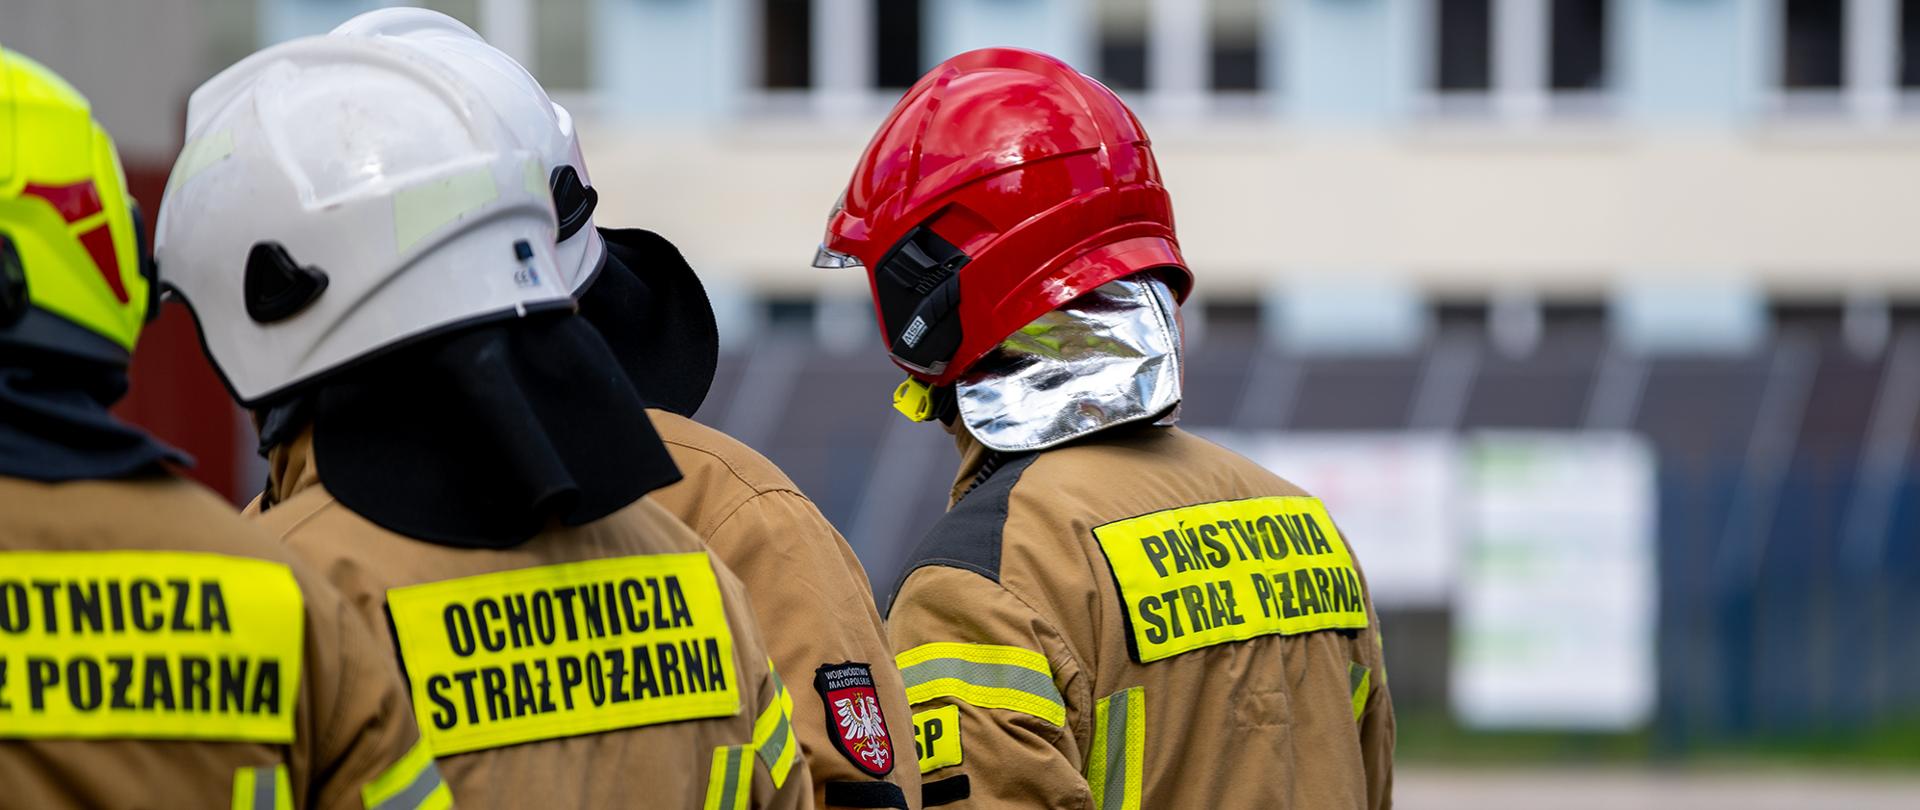 Egzamin oraz ślubowanie strażaków ratowników OSP